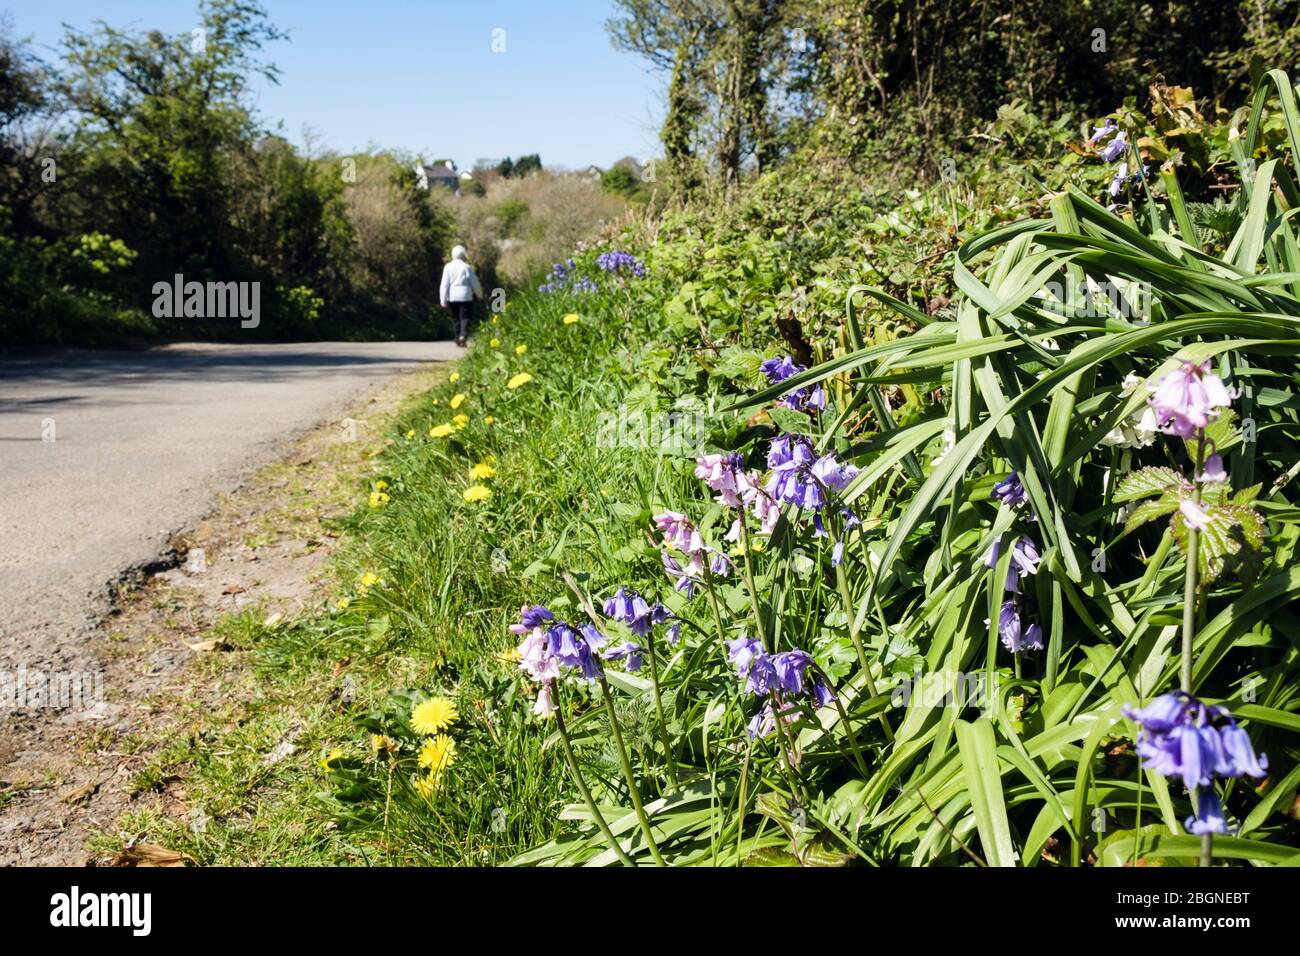 Couloir de campagne avec fleurs sauvages fleuries sur un verge d'herbe et une personne marchant sur une route calme au printemps. Benllech, île d'Anglesey, Pays de Galles du Nord, Royaume-Uni Banque D'Images